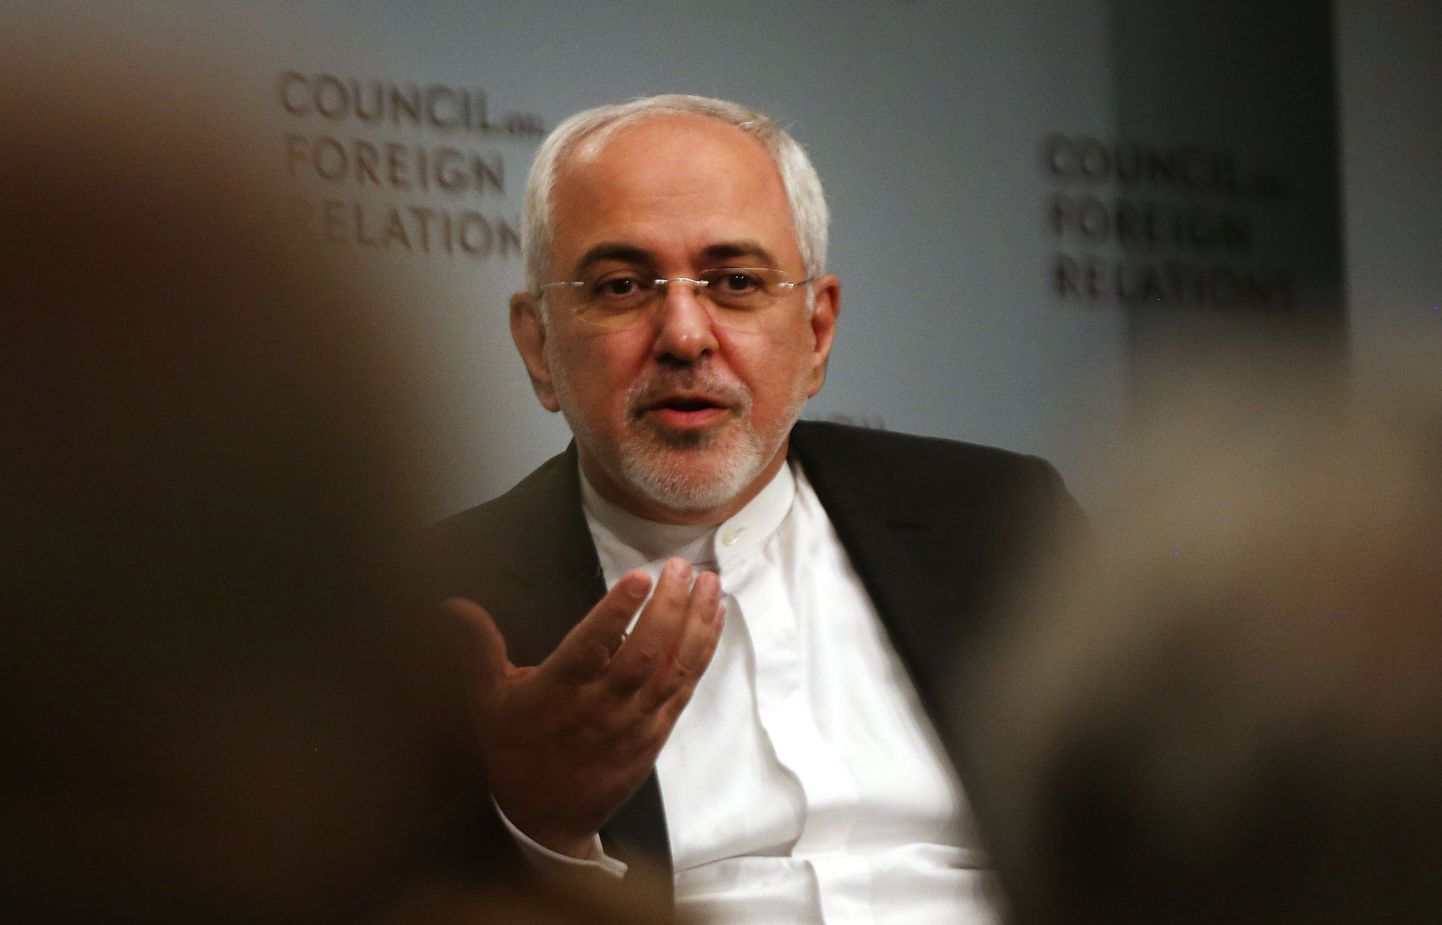 Iraani välisminister Mohammad Javad Zarif 17. juulil New Yorgis USA mõttekoja Välissuhete Nõukogu (Council of Foreign Relations)üritusel.